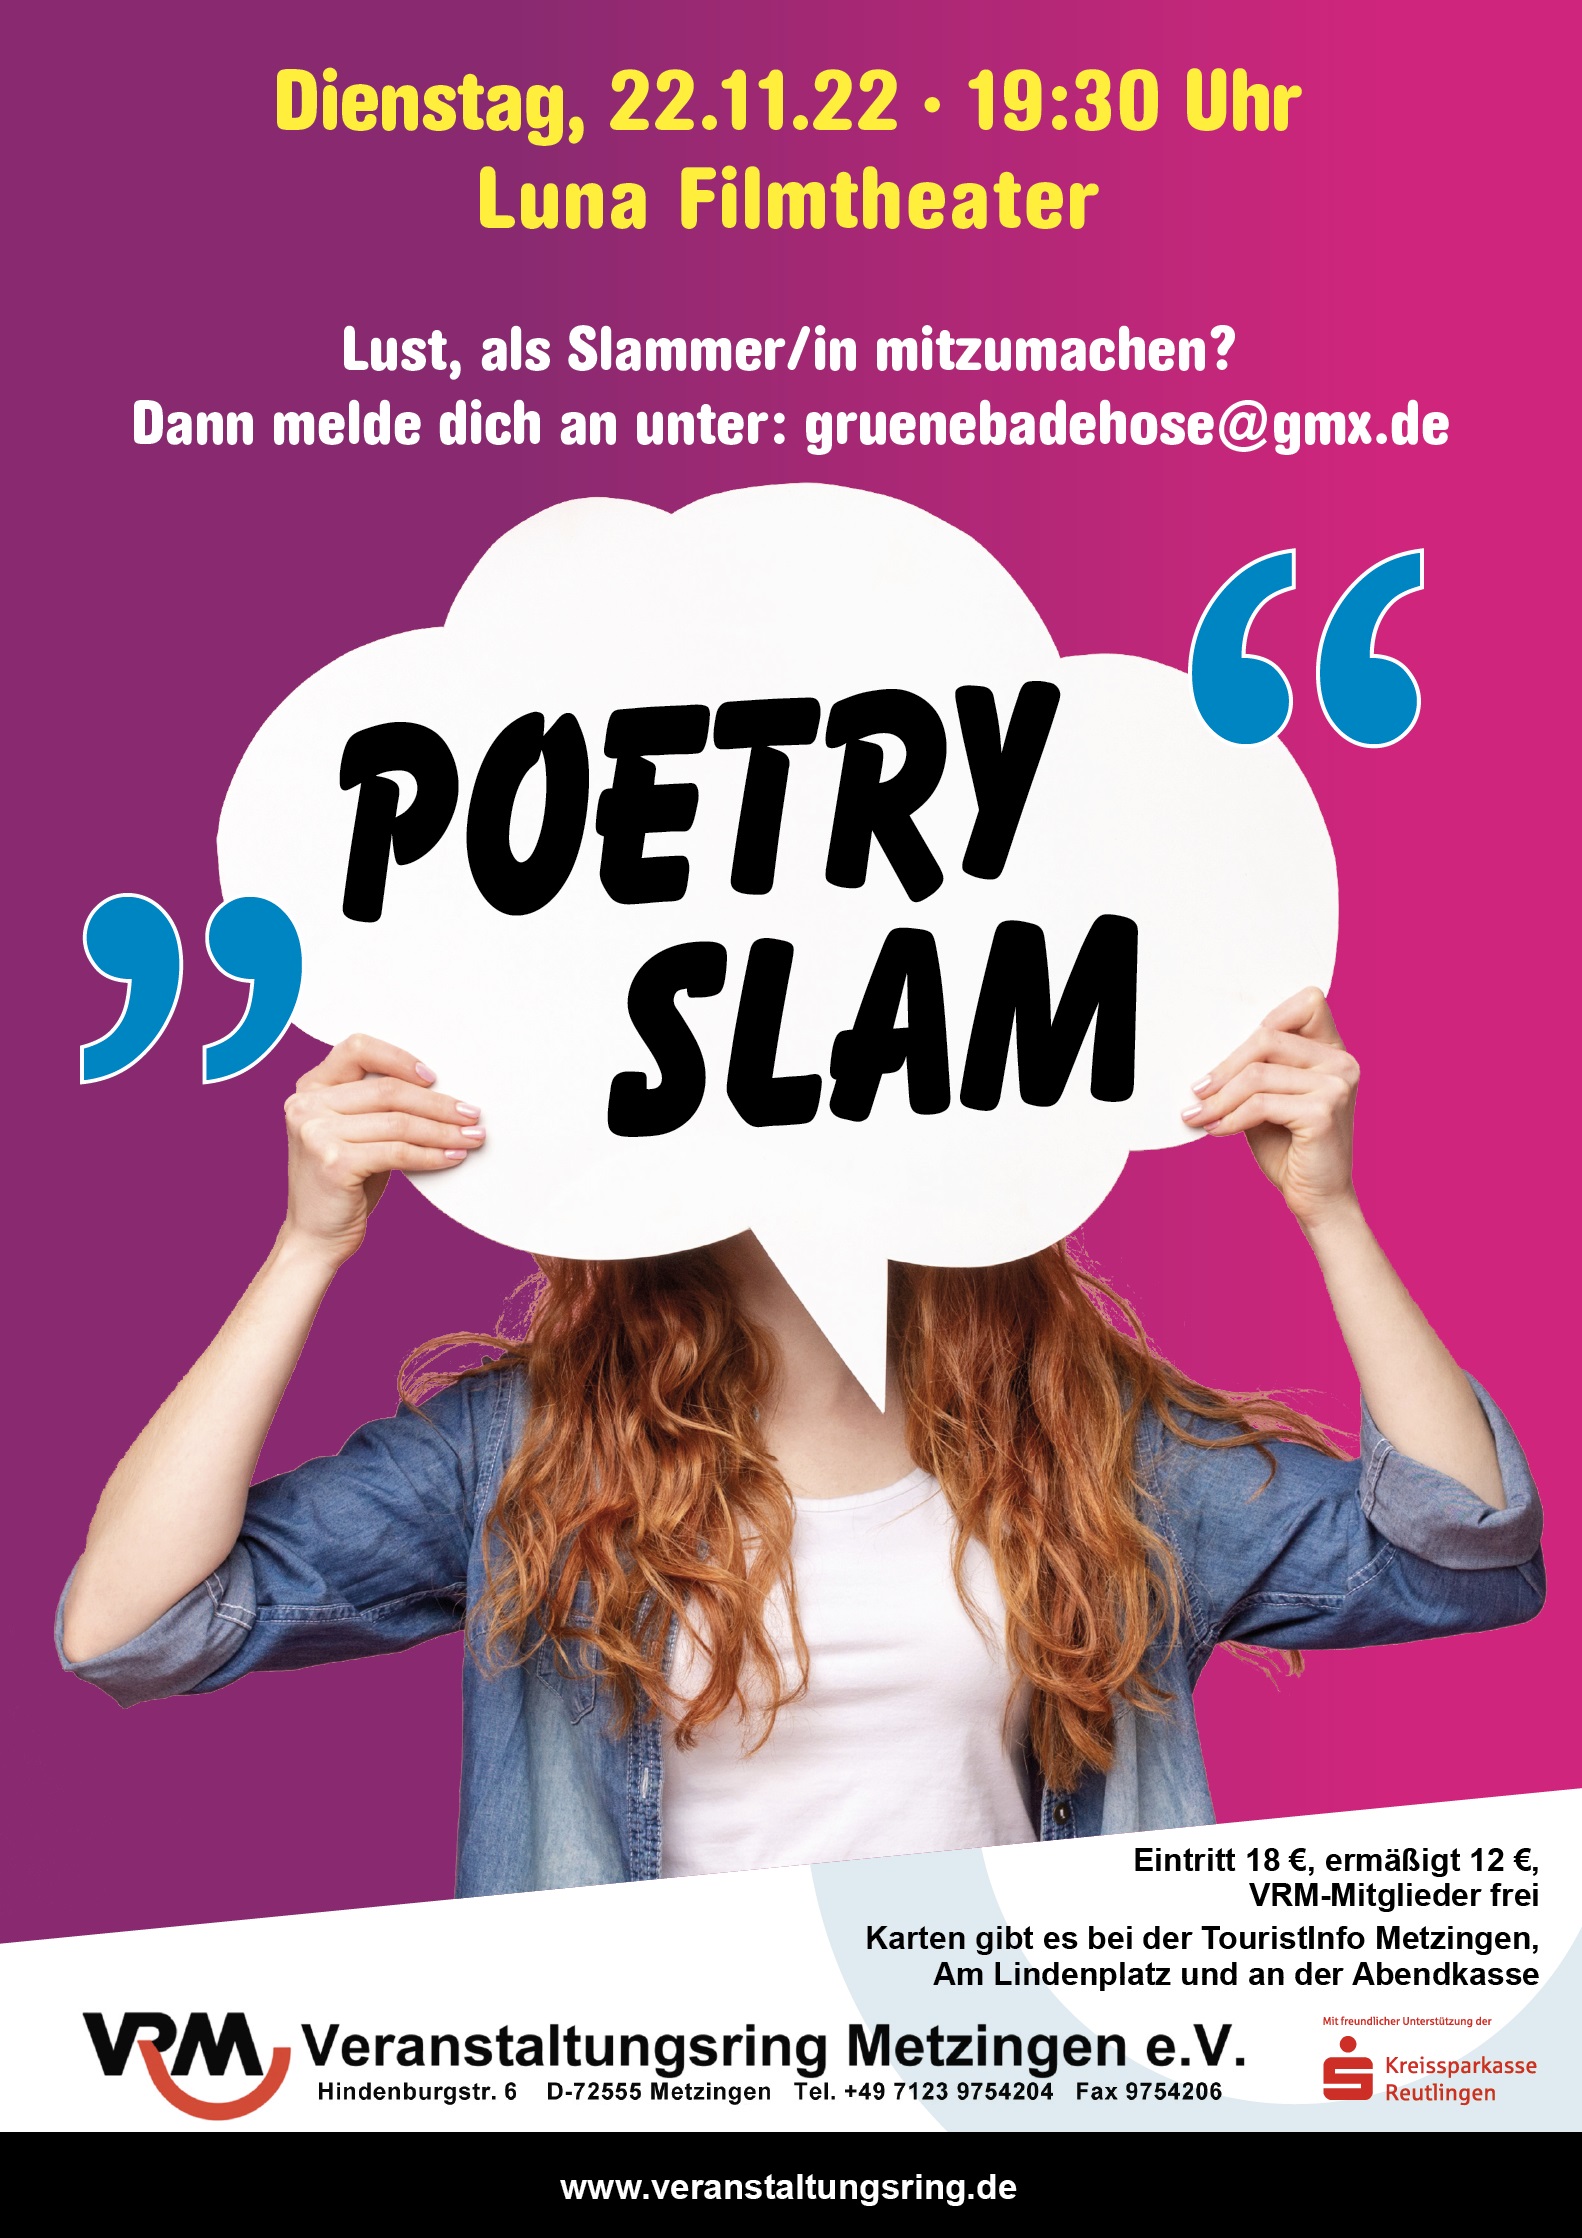 Walthers erster Poetry-Slam-Auftritt “eine tolle Erfahrung”